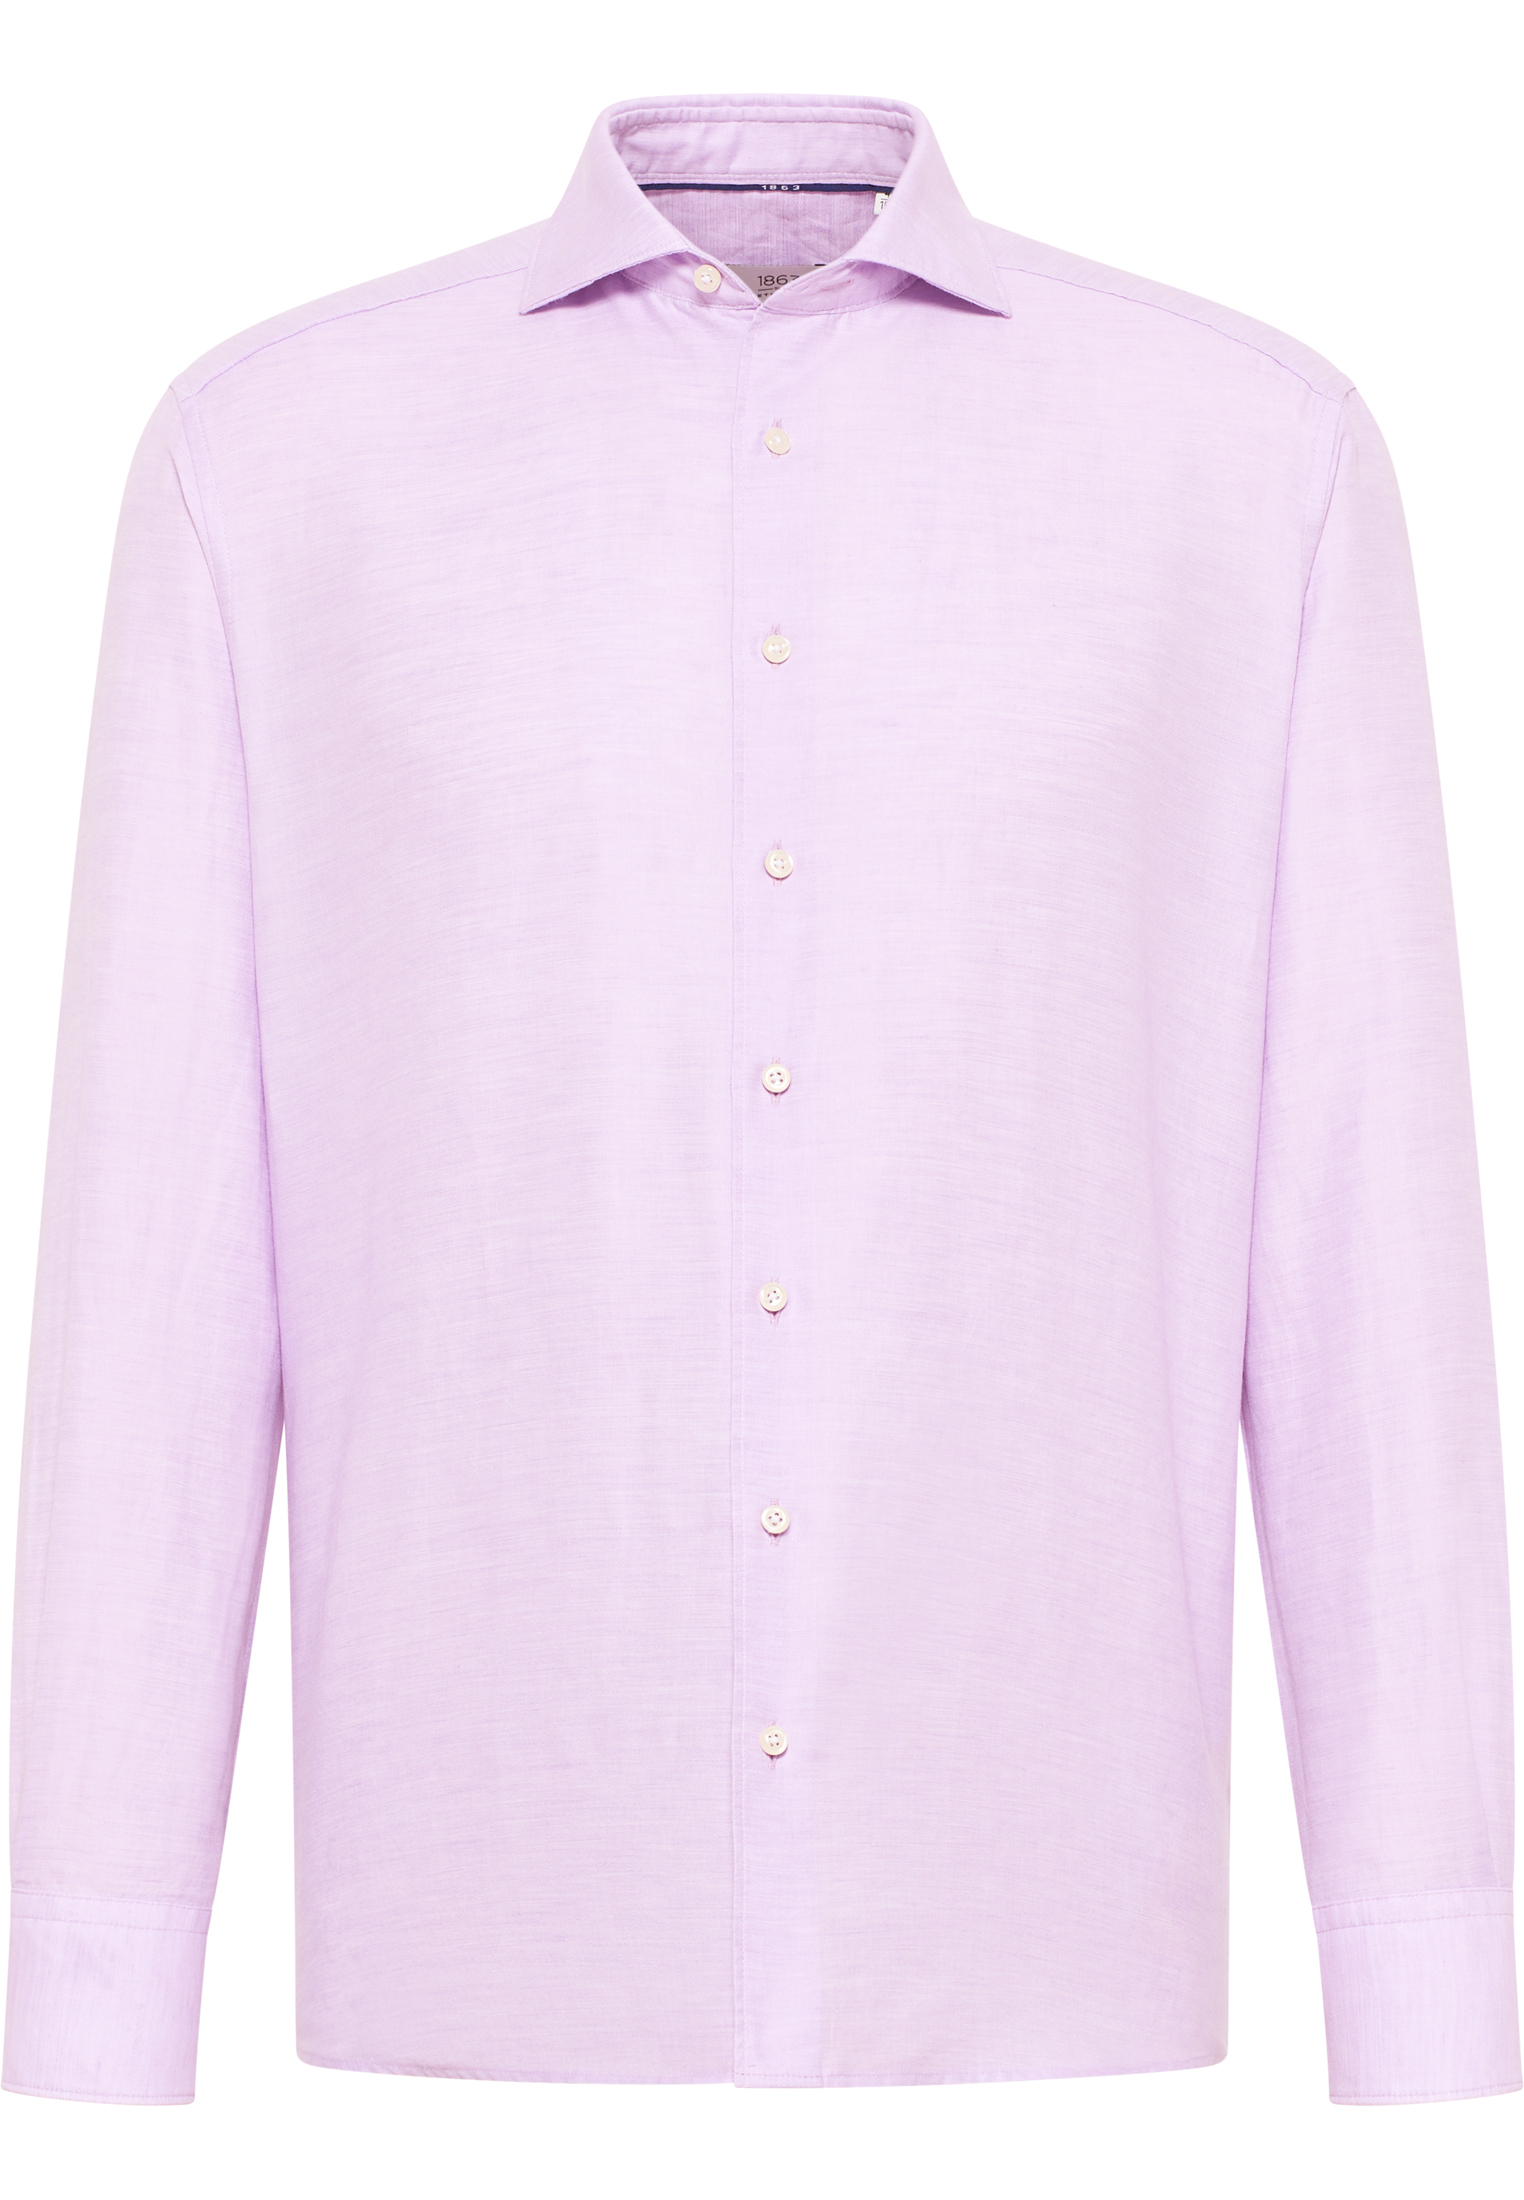 COMFORT FIT Linen Shirt in lavender plain